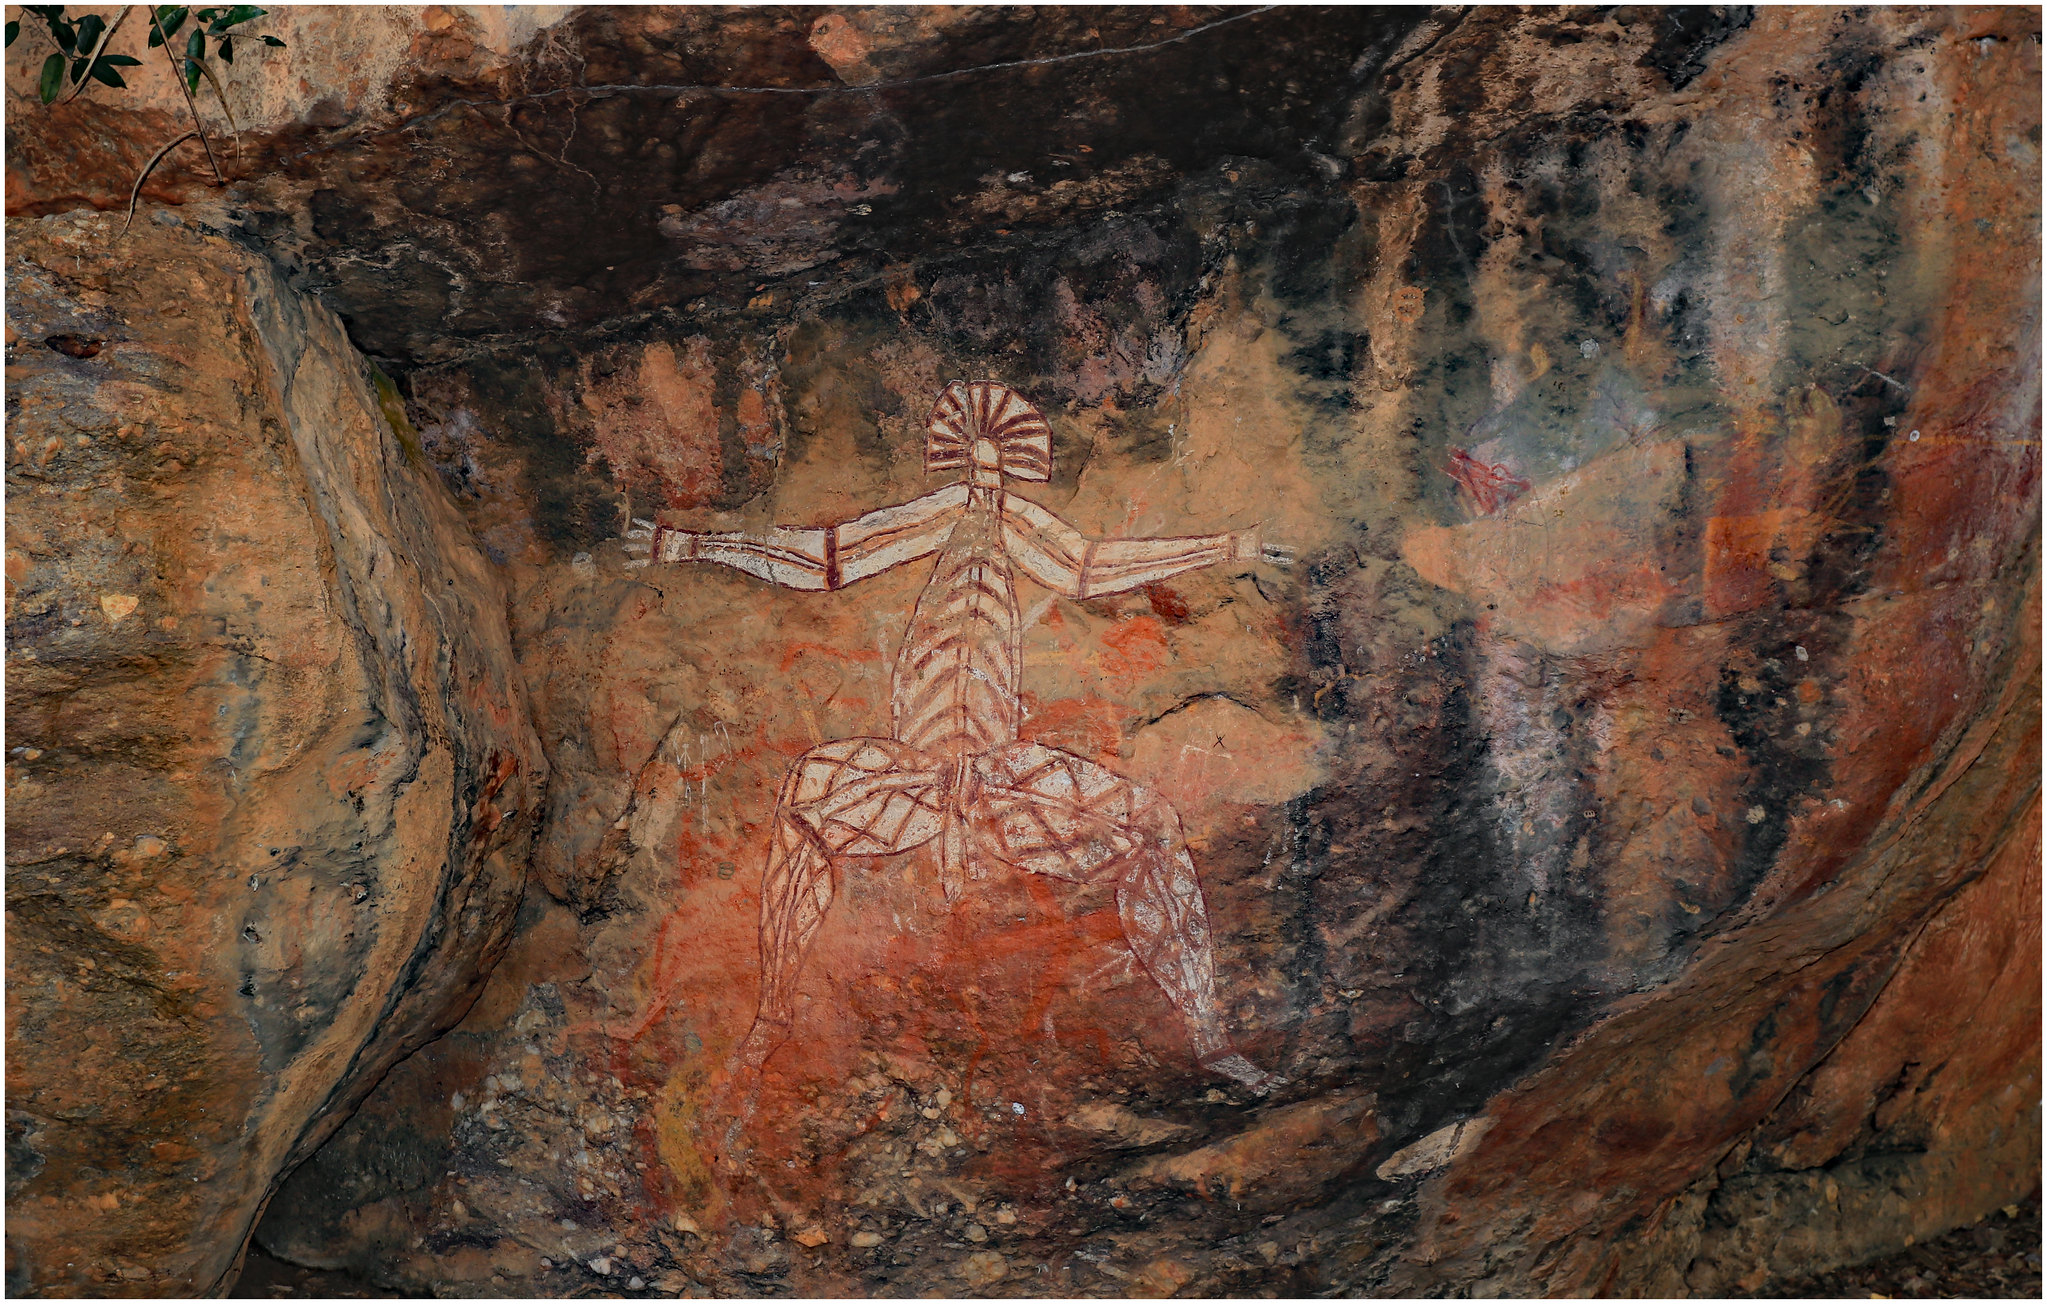 Tönkretettek egy 30 ezer éves barlangfestményt Ausztráliában